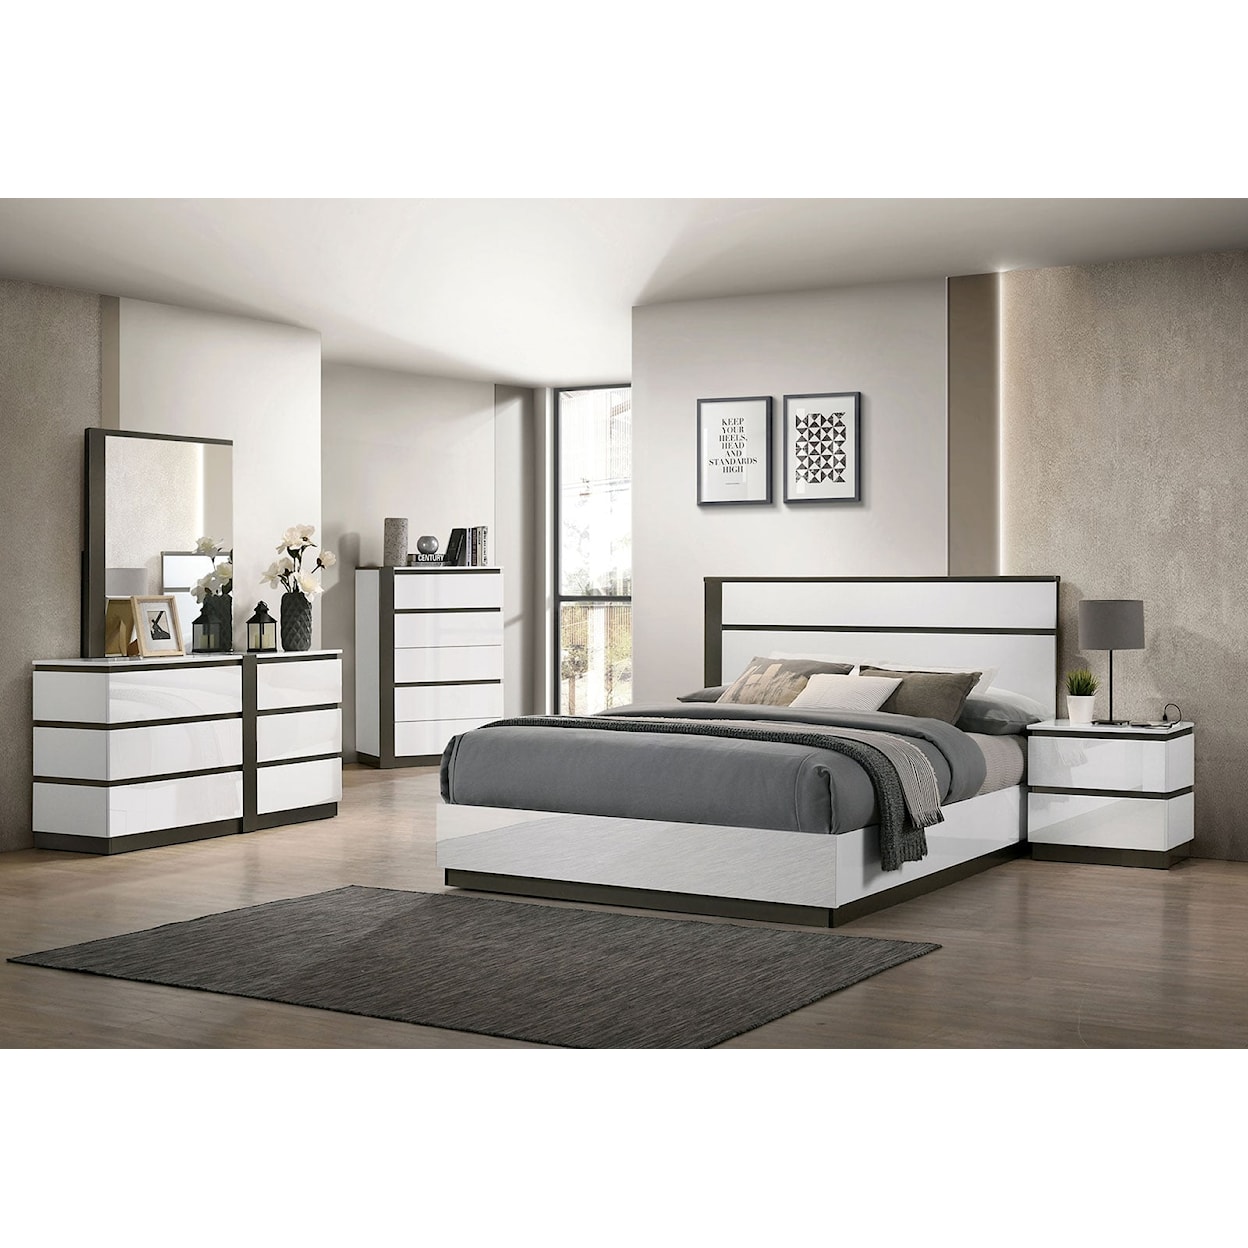 Furniture of America - FOA Birsfelden 5-Piece Queen Bedroom Set